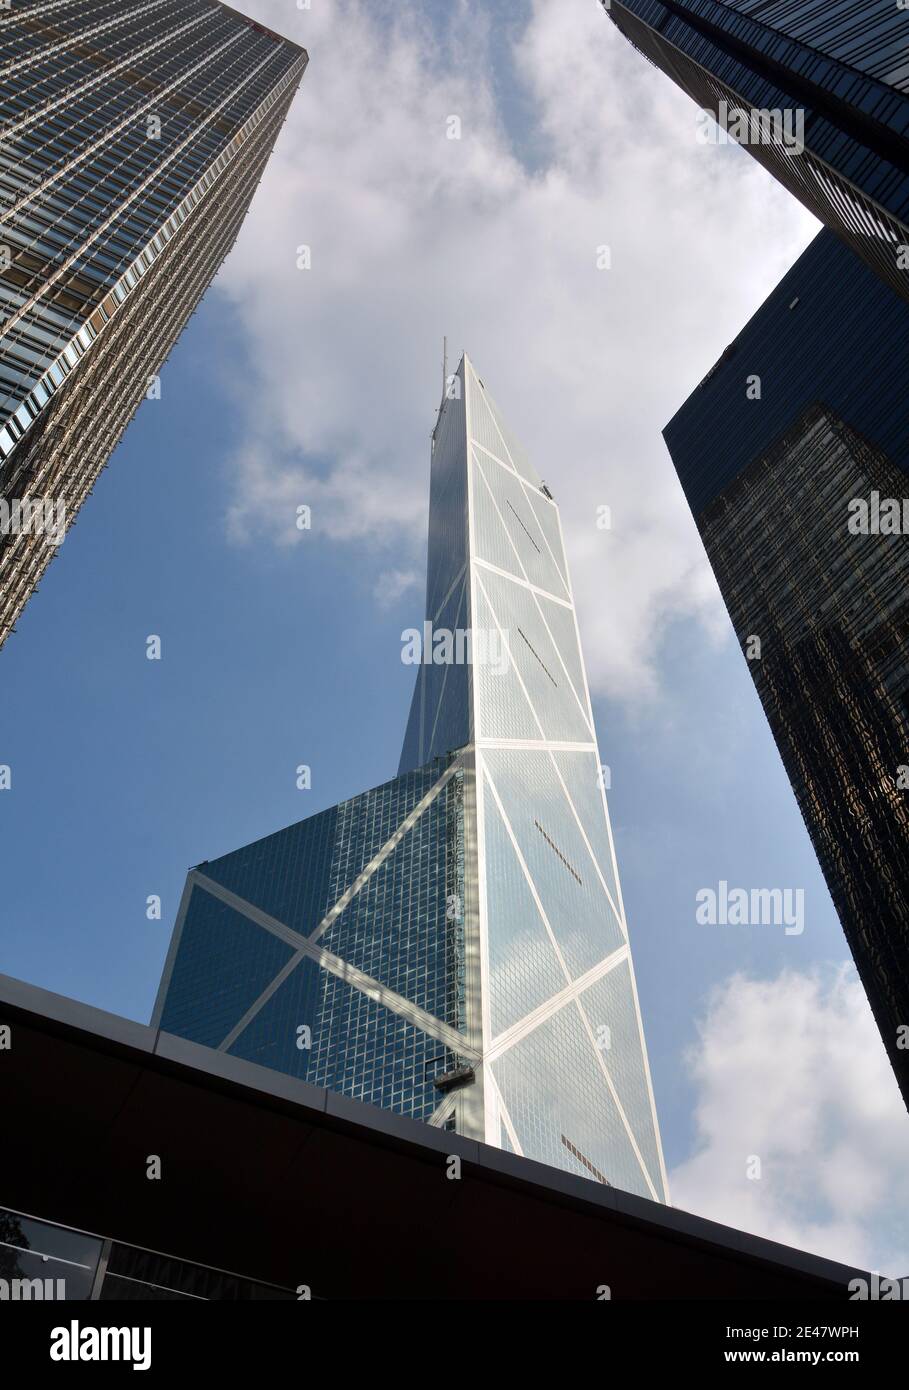 Der ikonische Turm der Bank of China, umrahmt von den hohen Gebäuden Hongkongs. Stockfoto